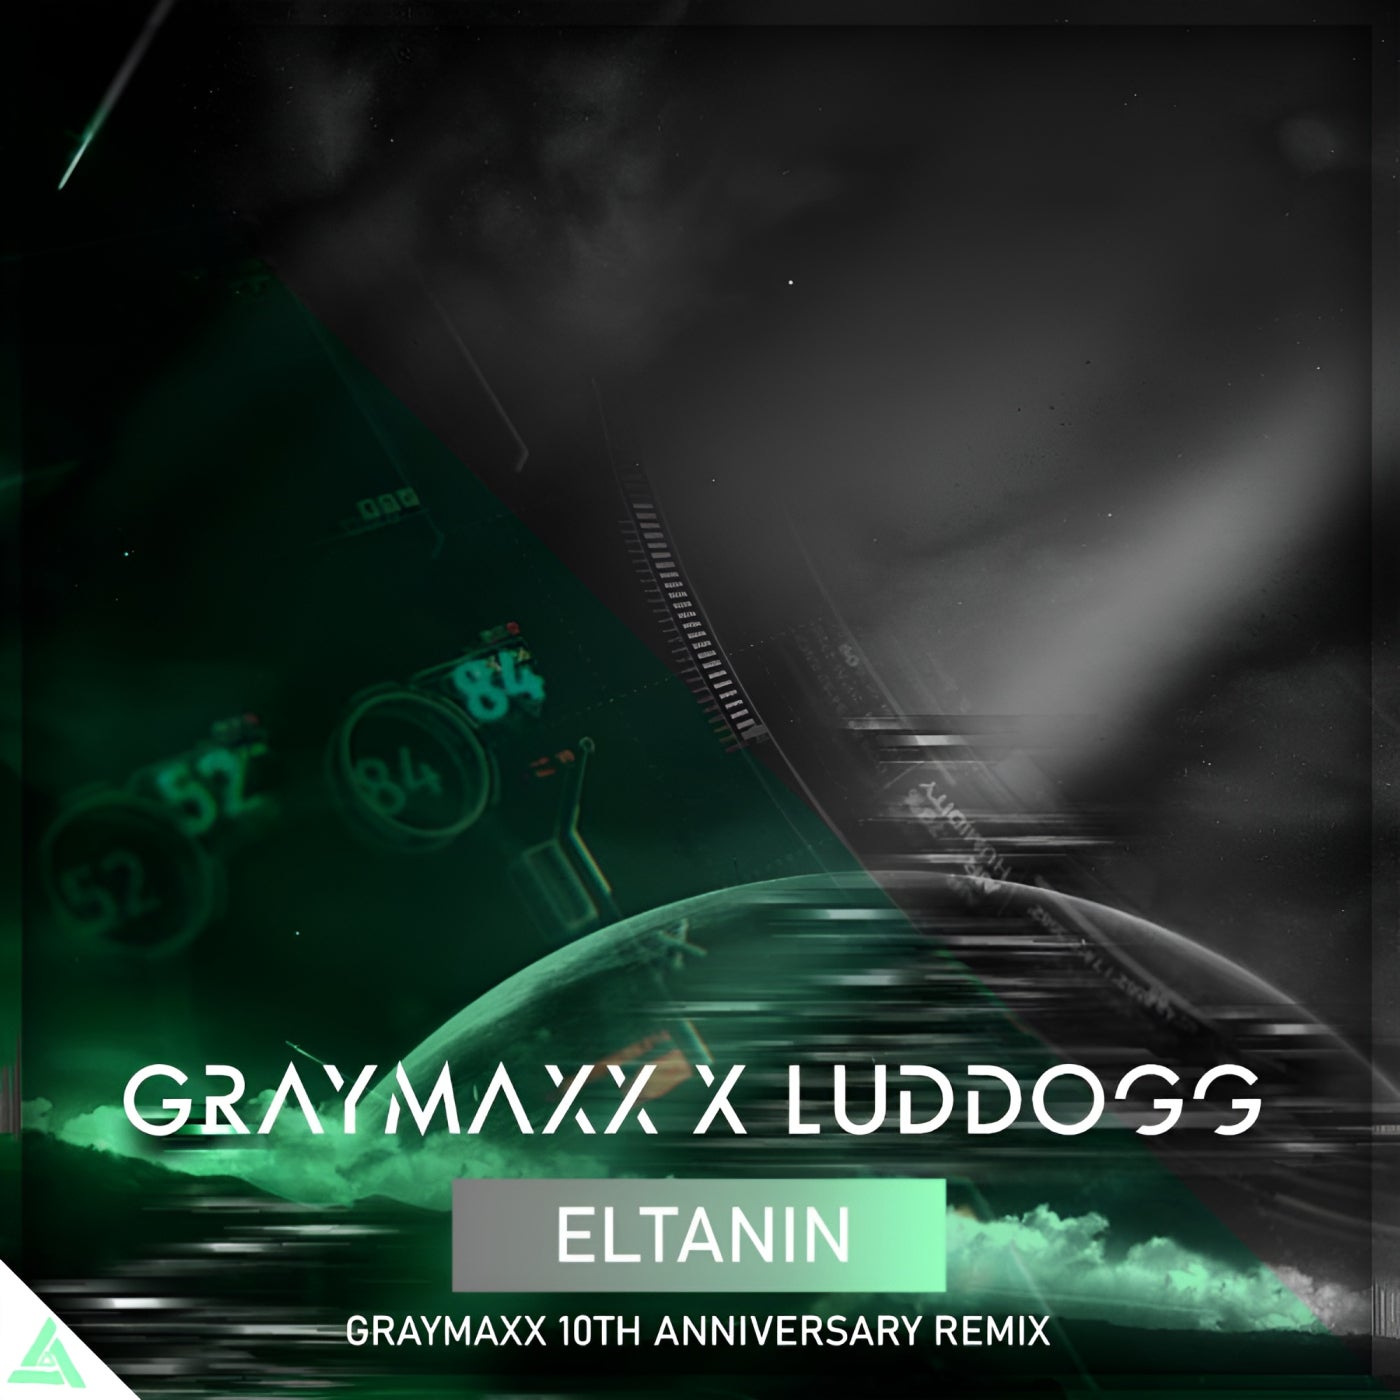 Eltanin (Graymaxx 10th Anniversary Remix)